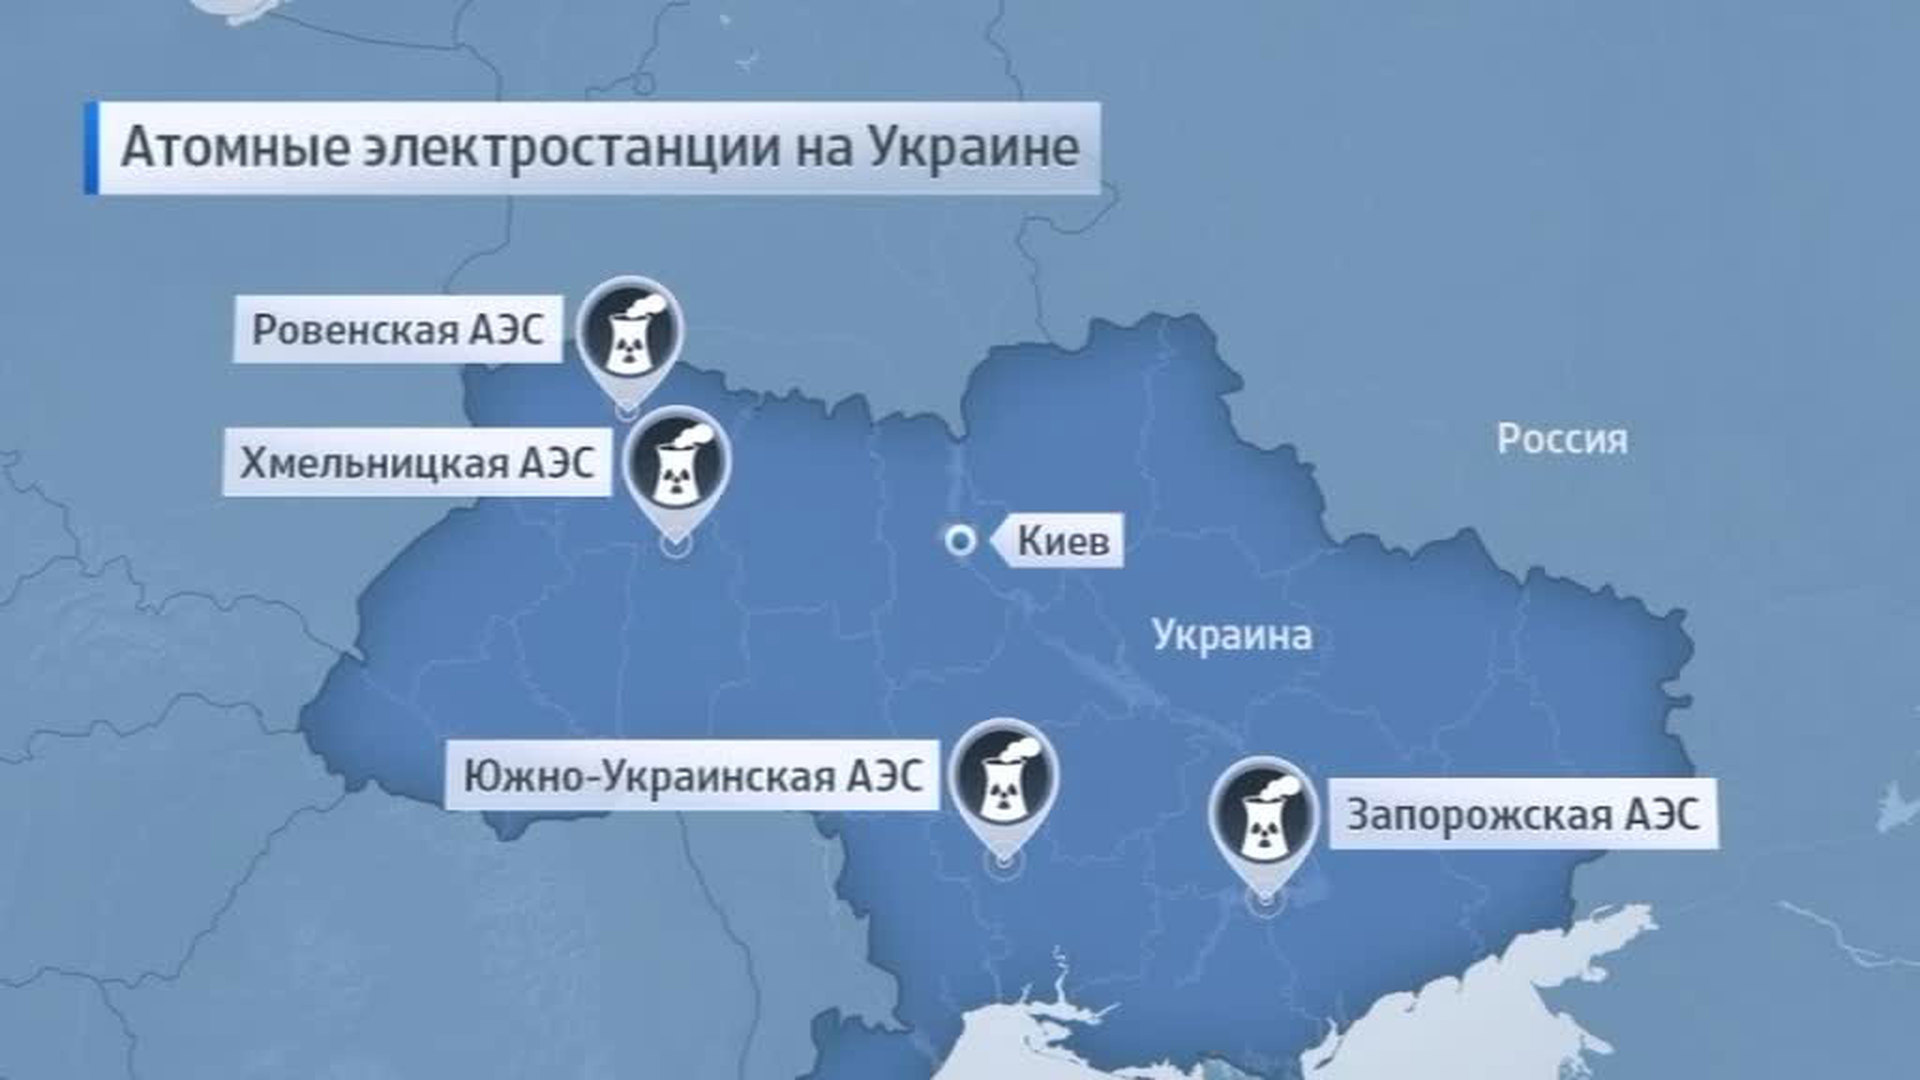 Запорожская аэс на карте где расположена. АЭС Украины на карте. Атомные станции Украины на карте. Электростанции АЭС Украине карта. Запорожская АЭС на карте Украины.